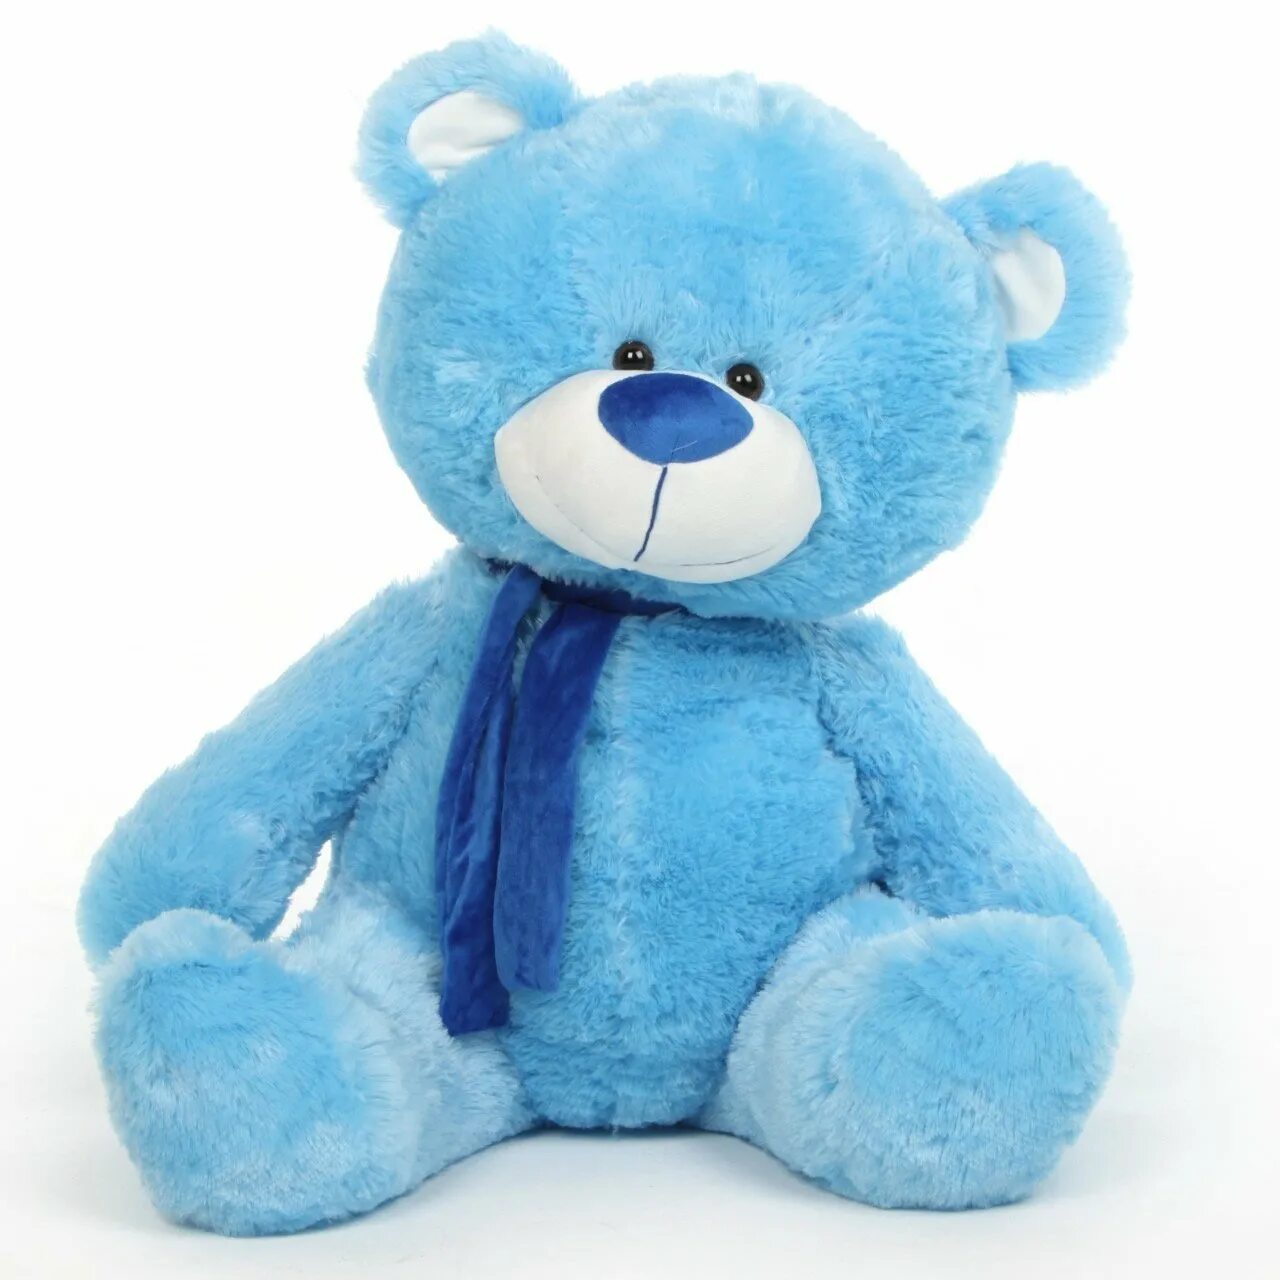 Медвежонок Тедди голубой. Мишка Тедди с голубым мишкой. Плюшевые игрушки. Мягкая игрушка синий медведь.